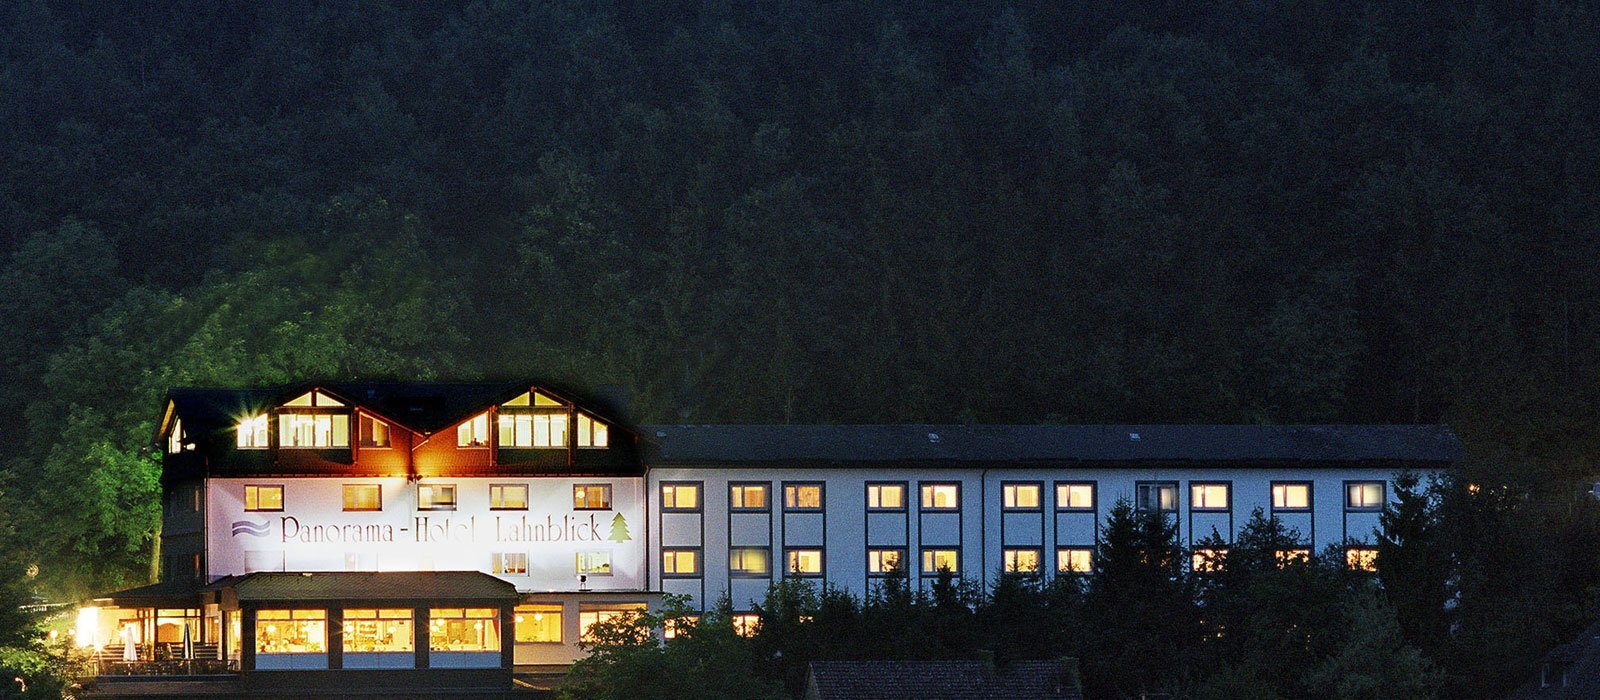 Übernachtung plus Halbpension für 2 Nächte – Hotel Lahnblick  in Bad Laasphe, Nordrhein-Westfalen inkl. Halbpension